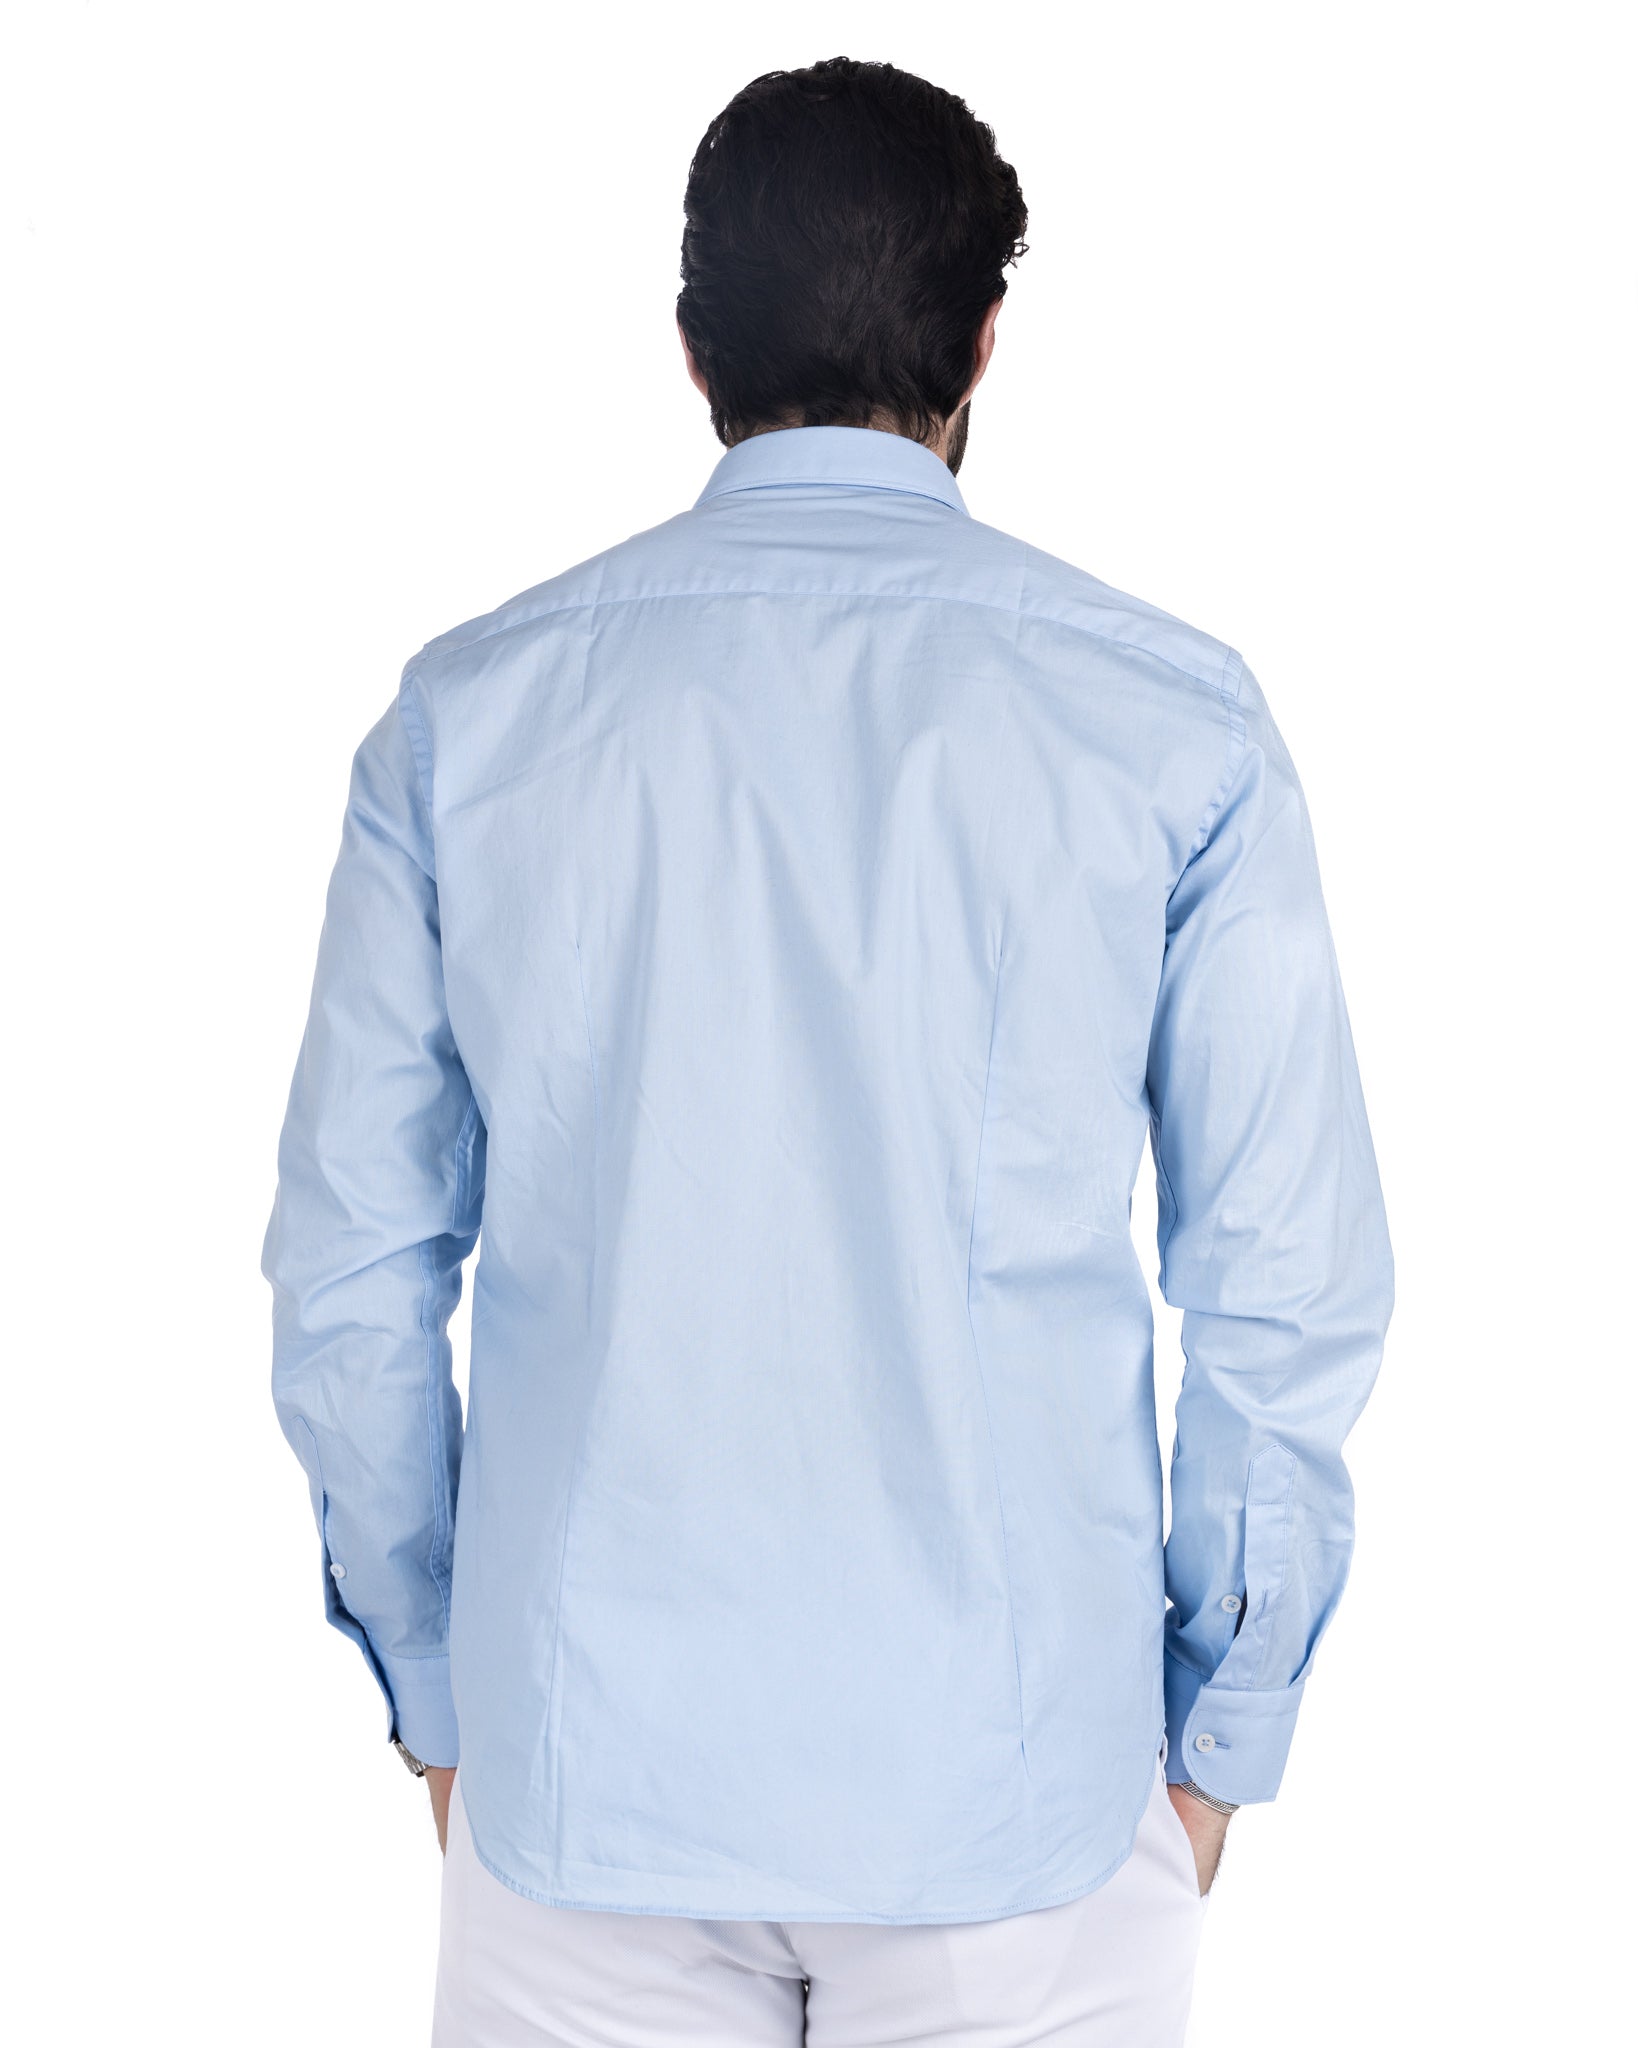 Chemise - classique bleu clair basique en coton